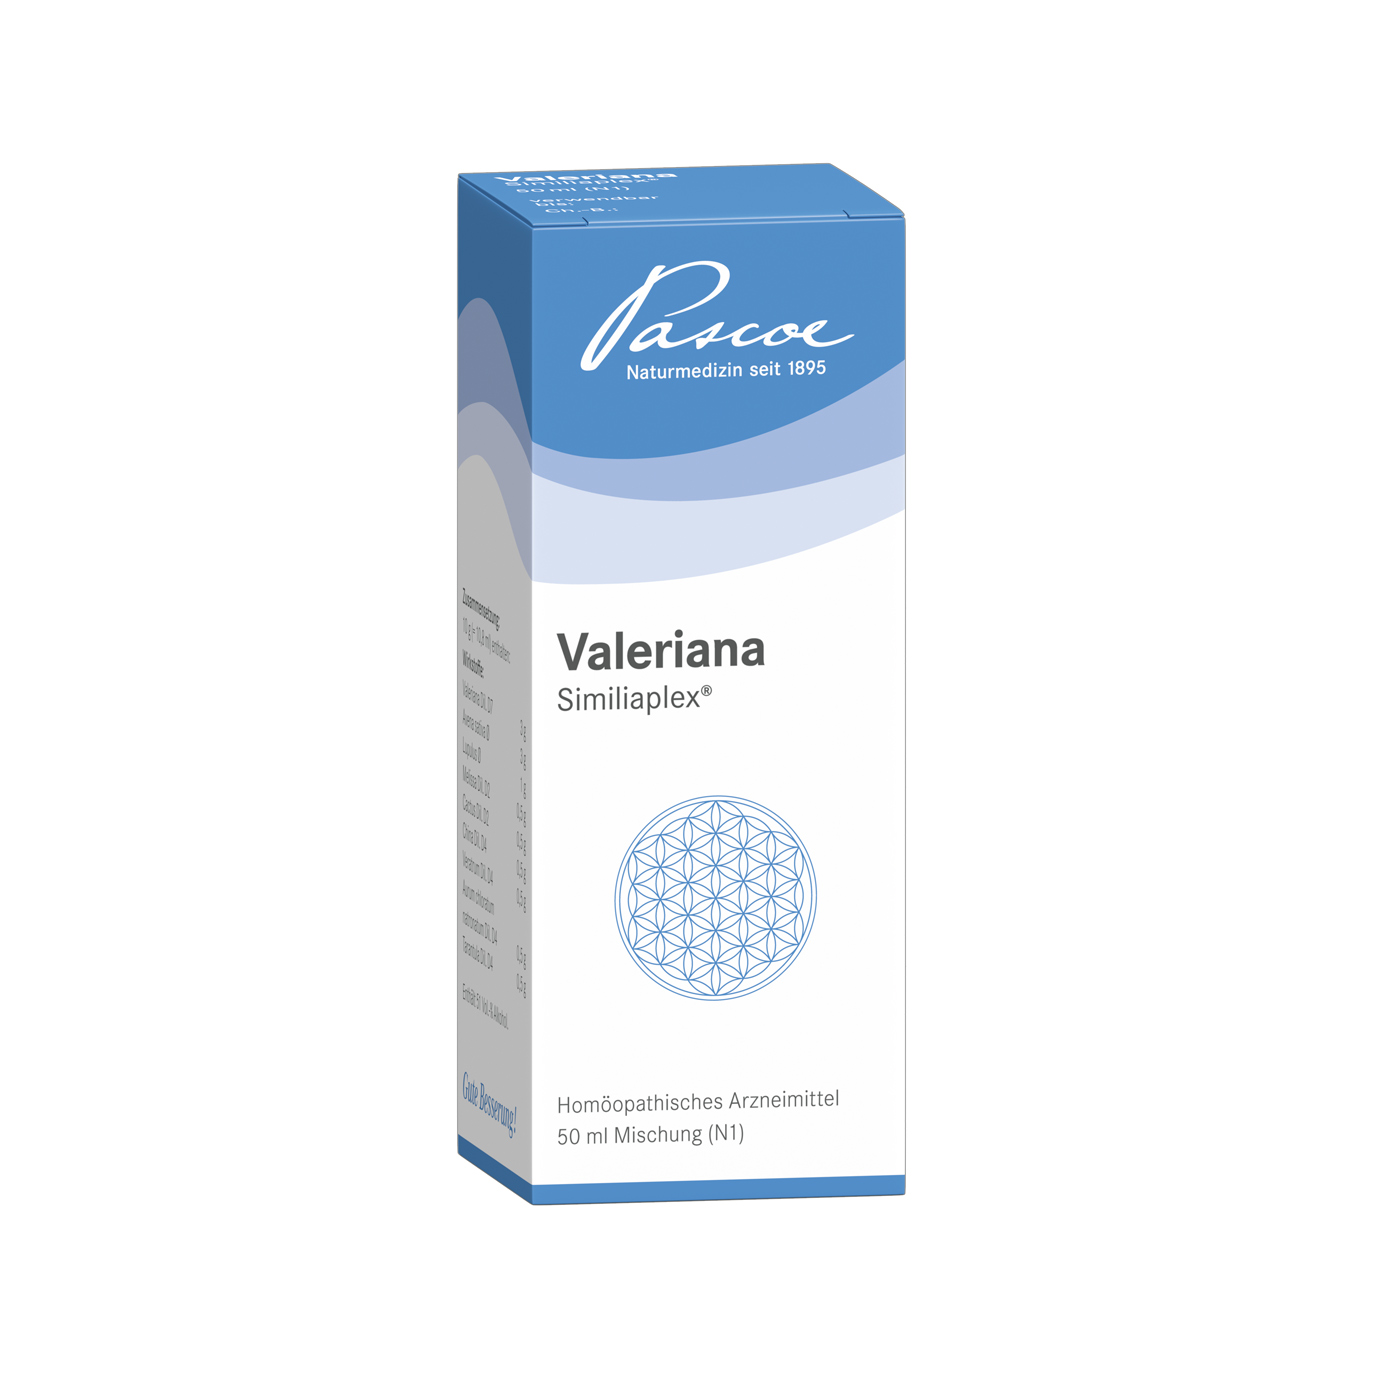 Valeriana Similiaplex 50 ml Packshot PZN 01355030